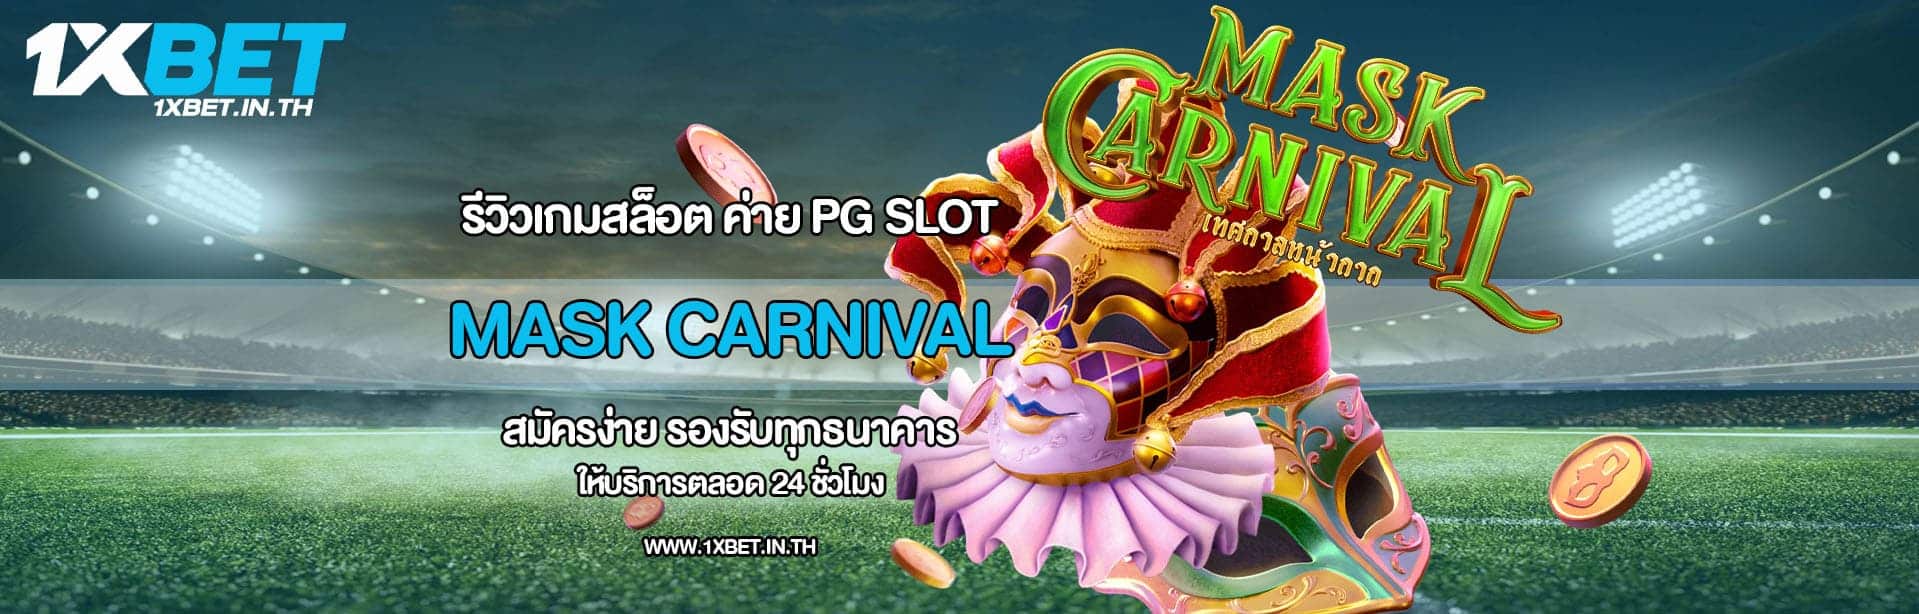 รีวิว Mask Carnival